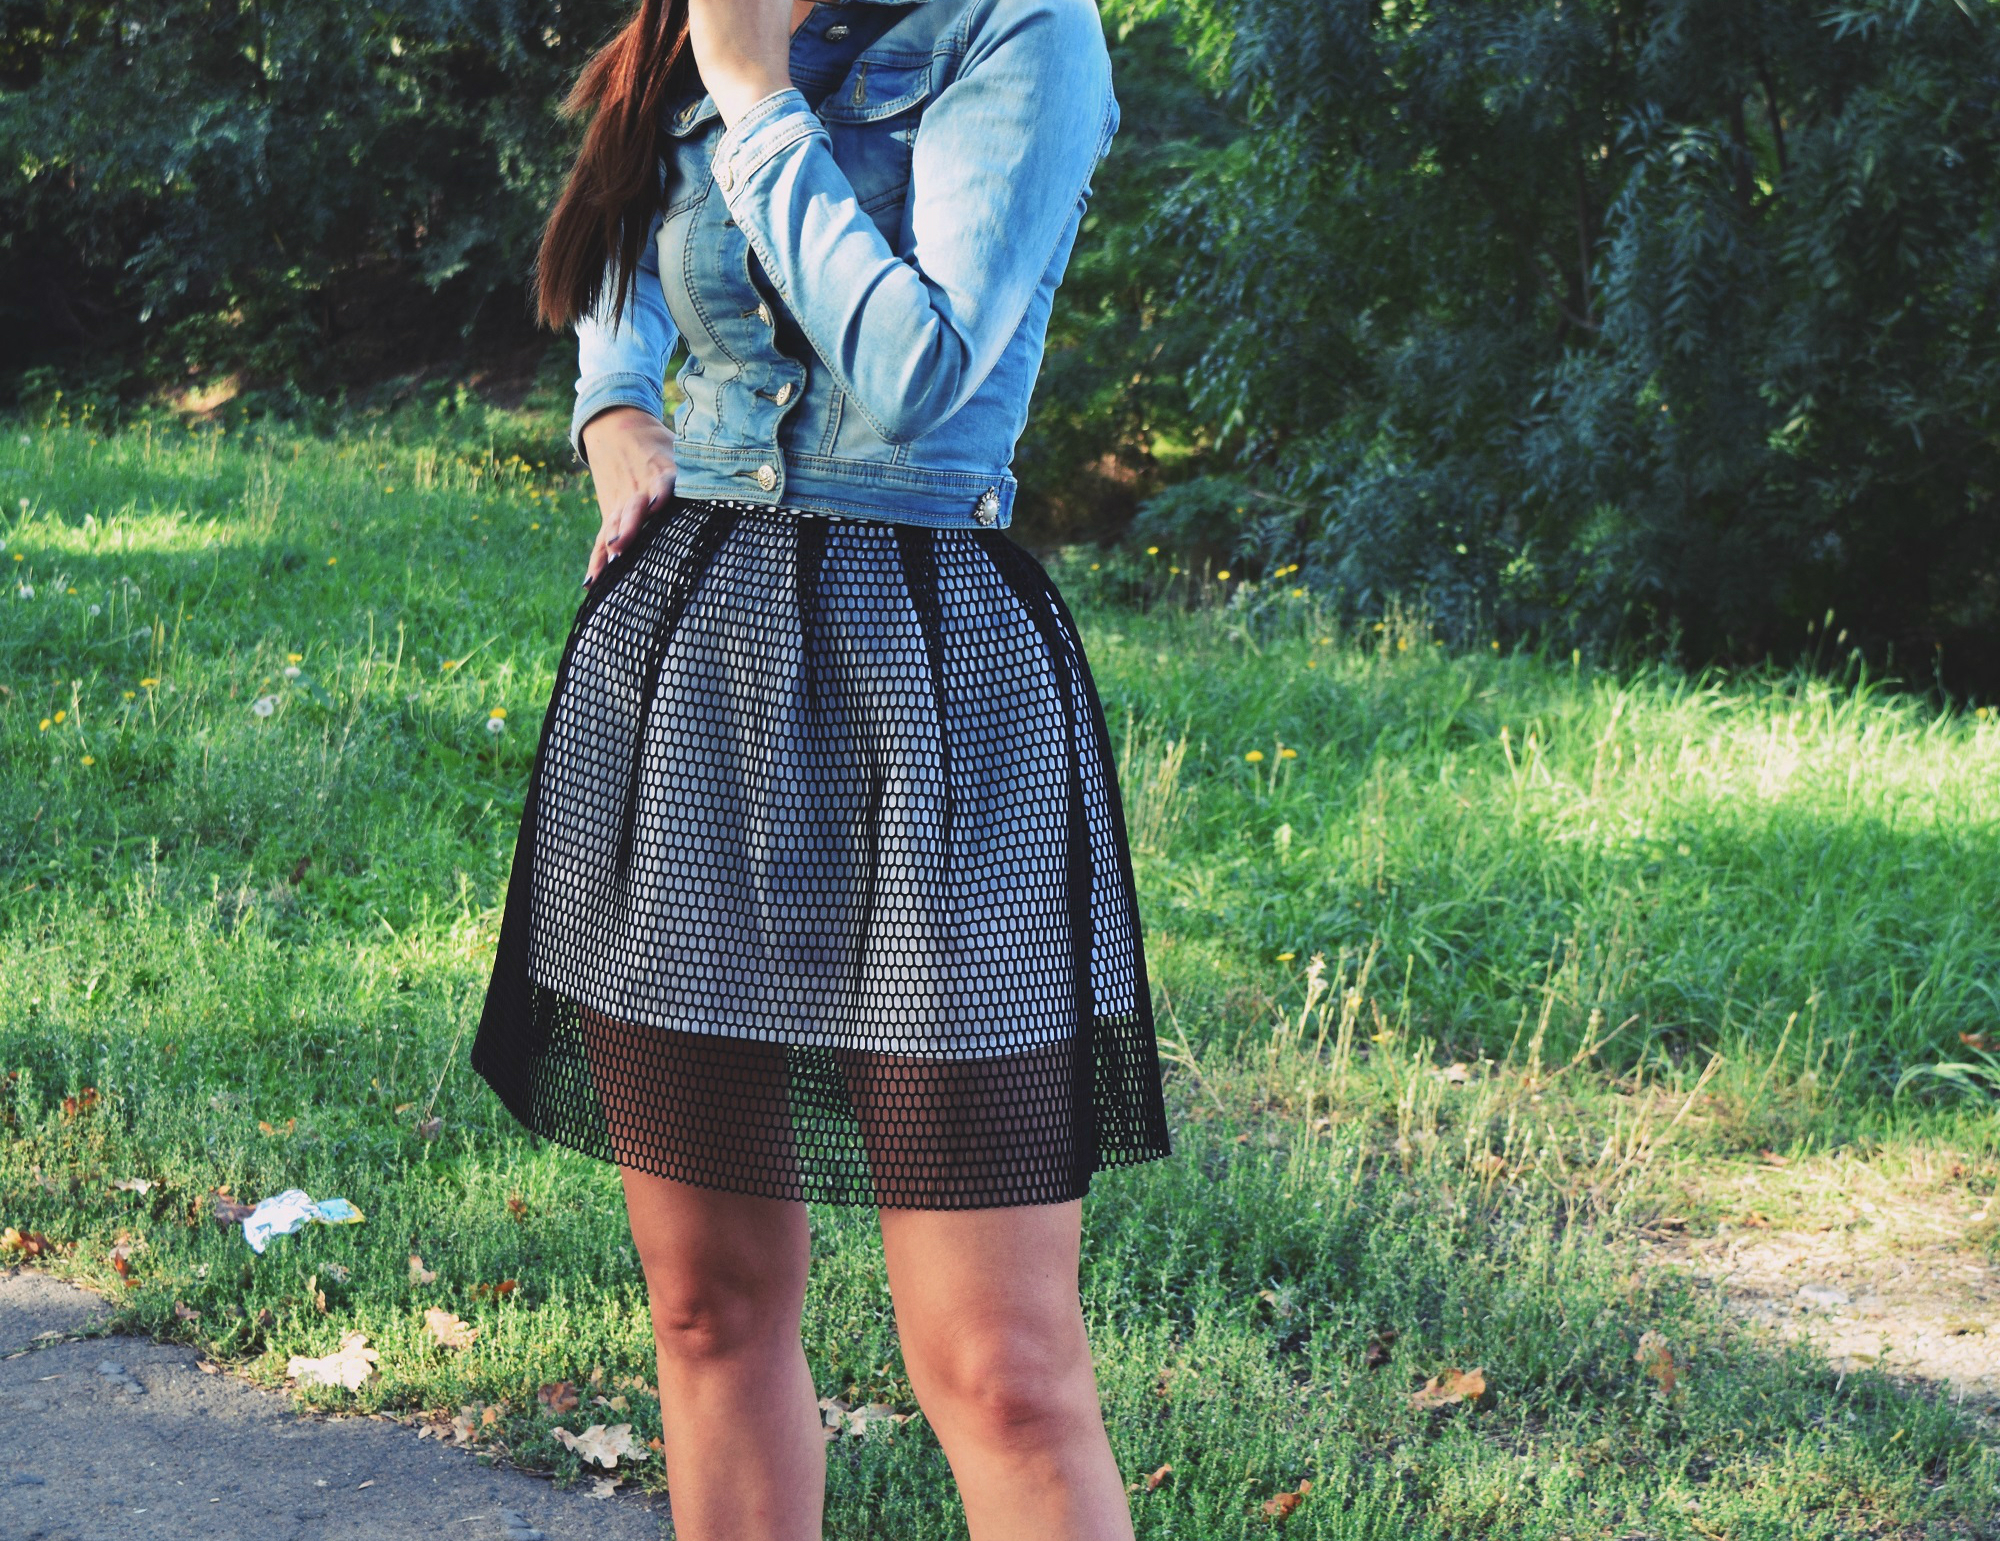 Lovely skirt